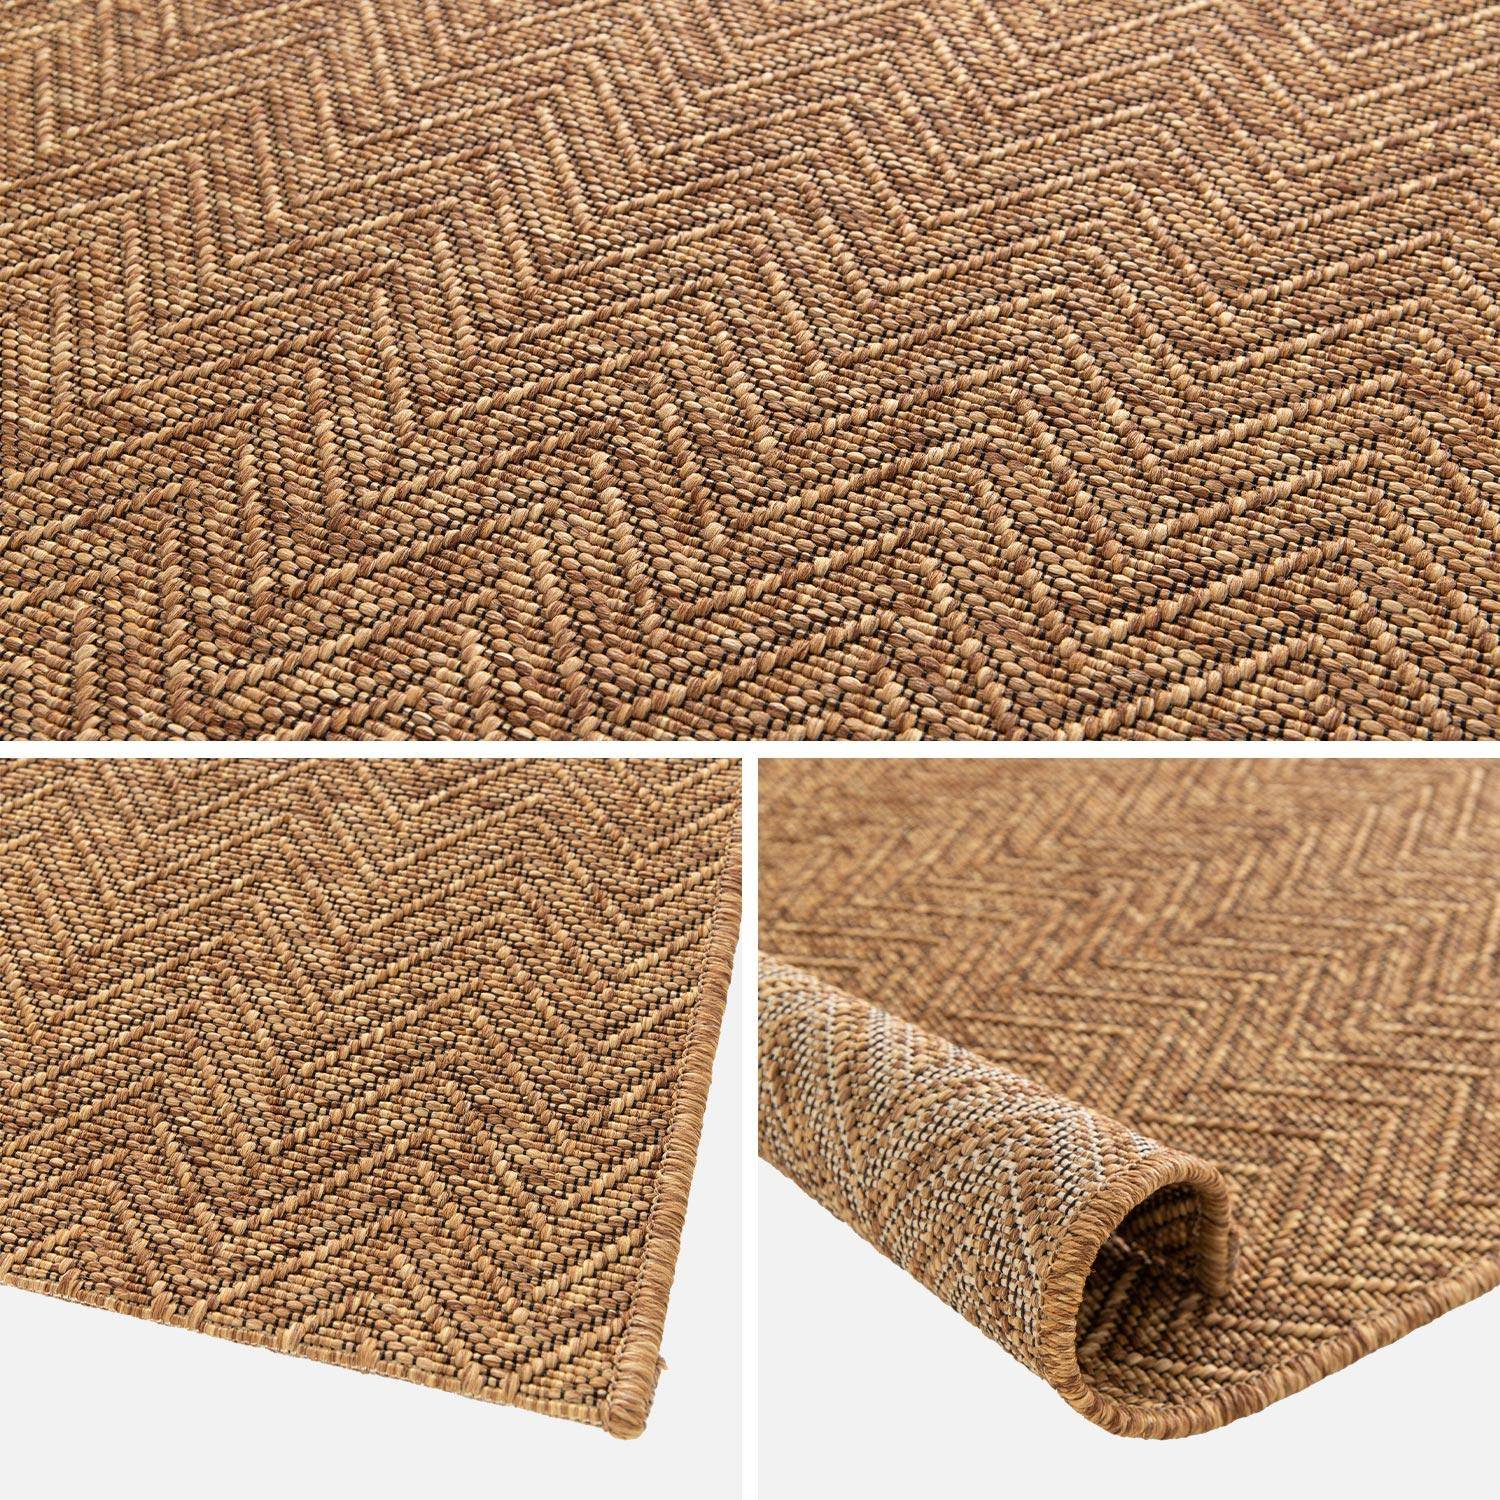 Jute-effect indoor/outdoor carpet in caramel, Oliver, 160 x 230 cm,sweeek,Photo5